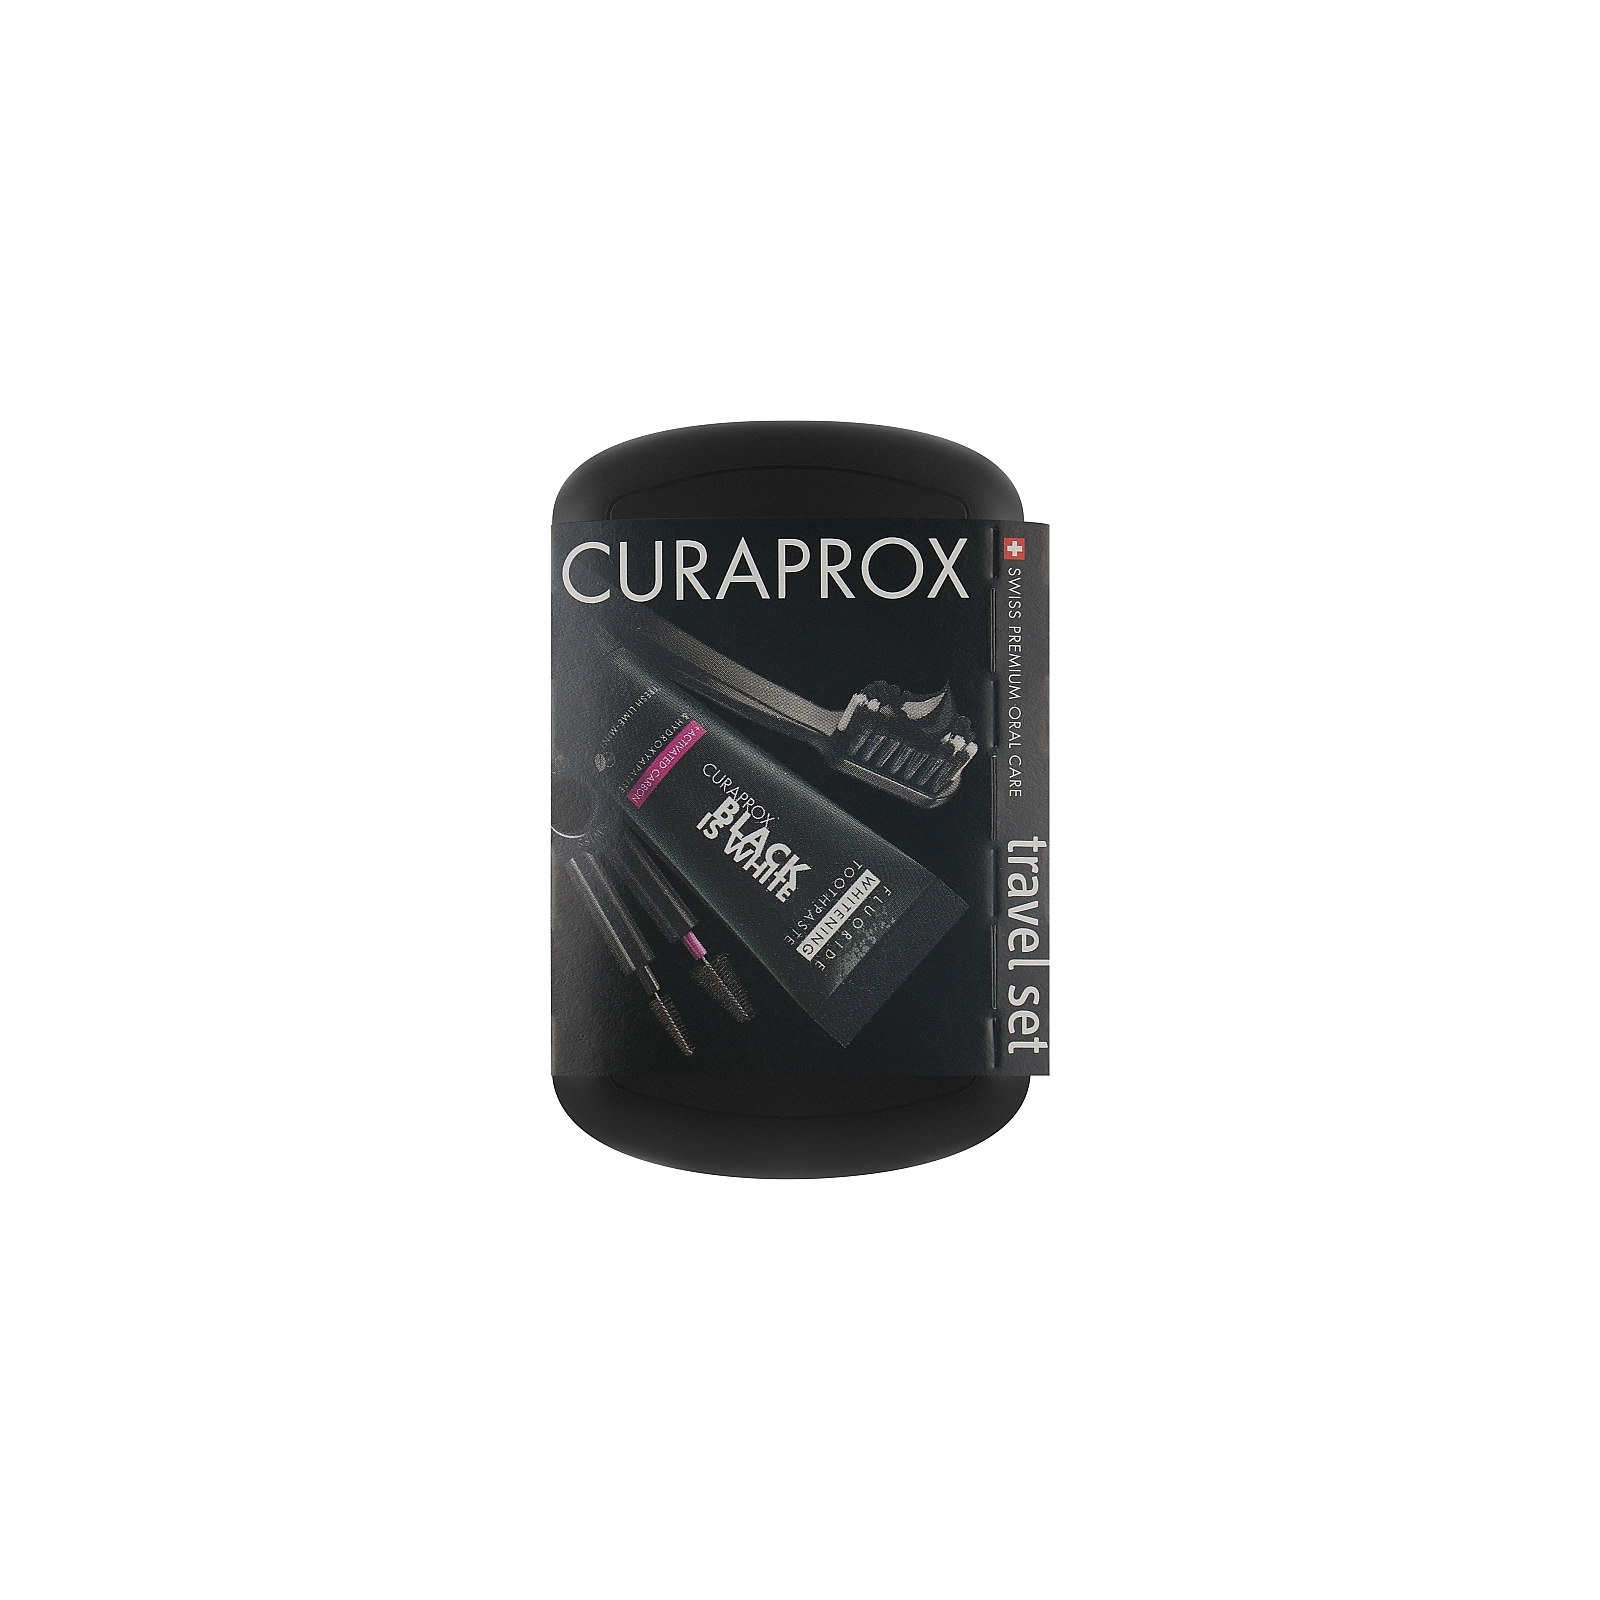 Набор косметики Curaprox Black is White Дорожный гигиенический (7612412430332)